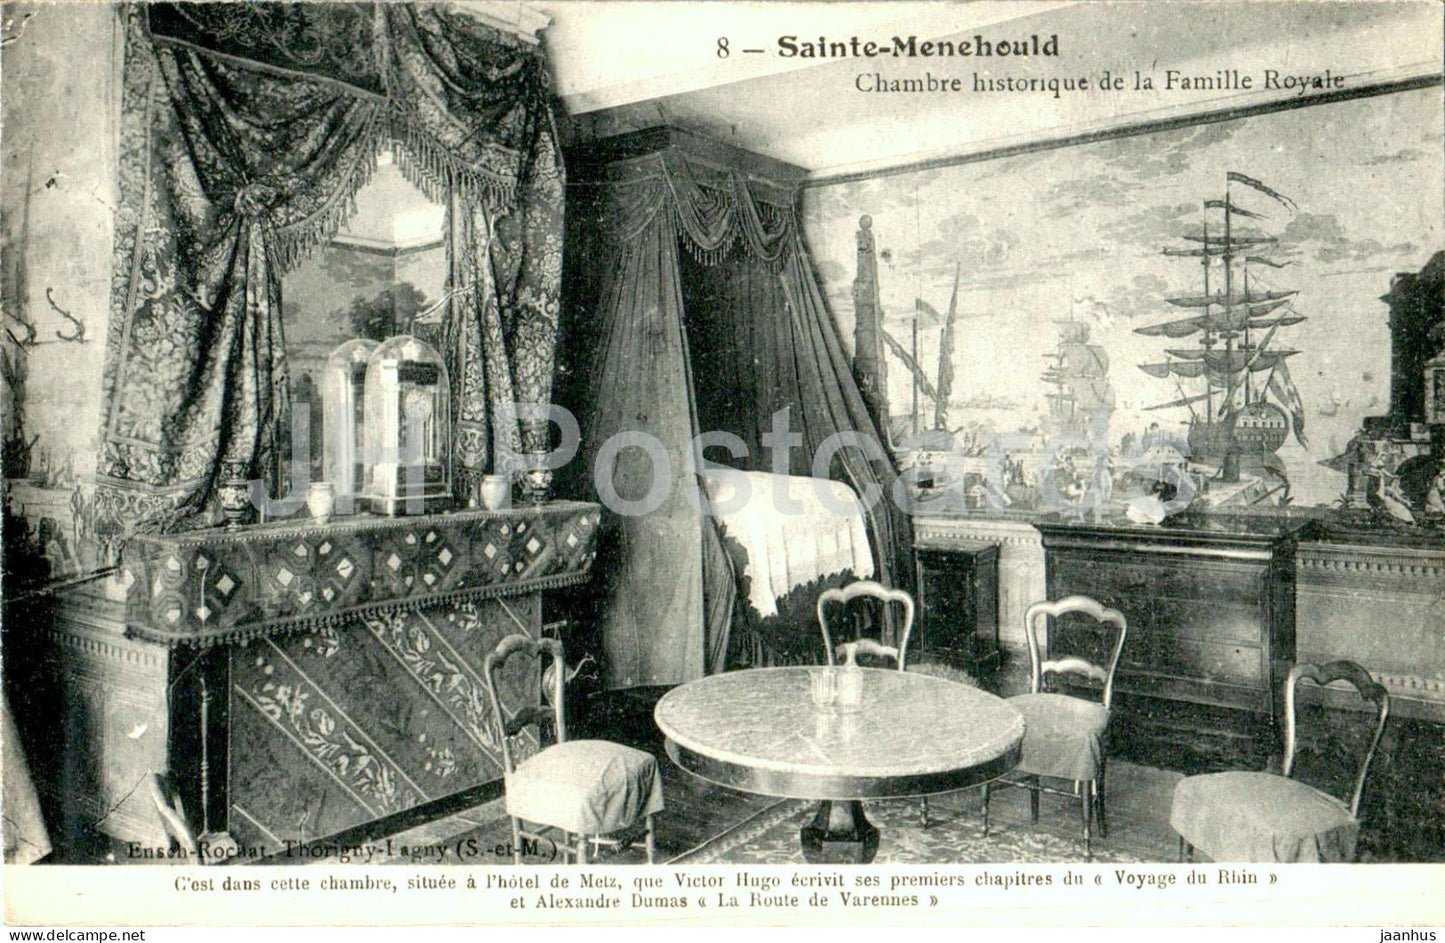 Sainte Menehould - Chambre historique de la Famille Royale - 8 - old postcard - France - unused - JH Postcards